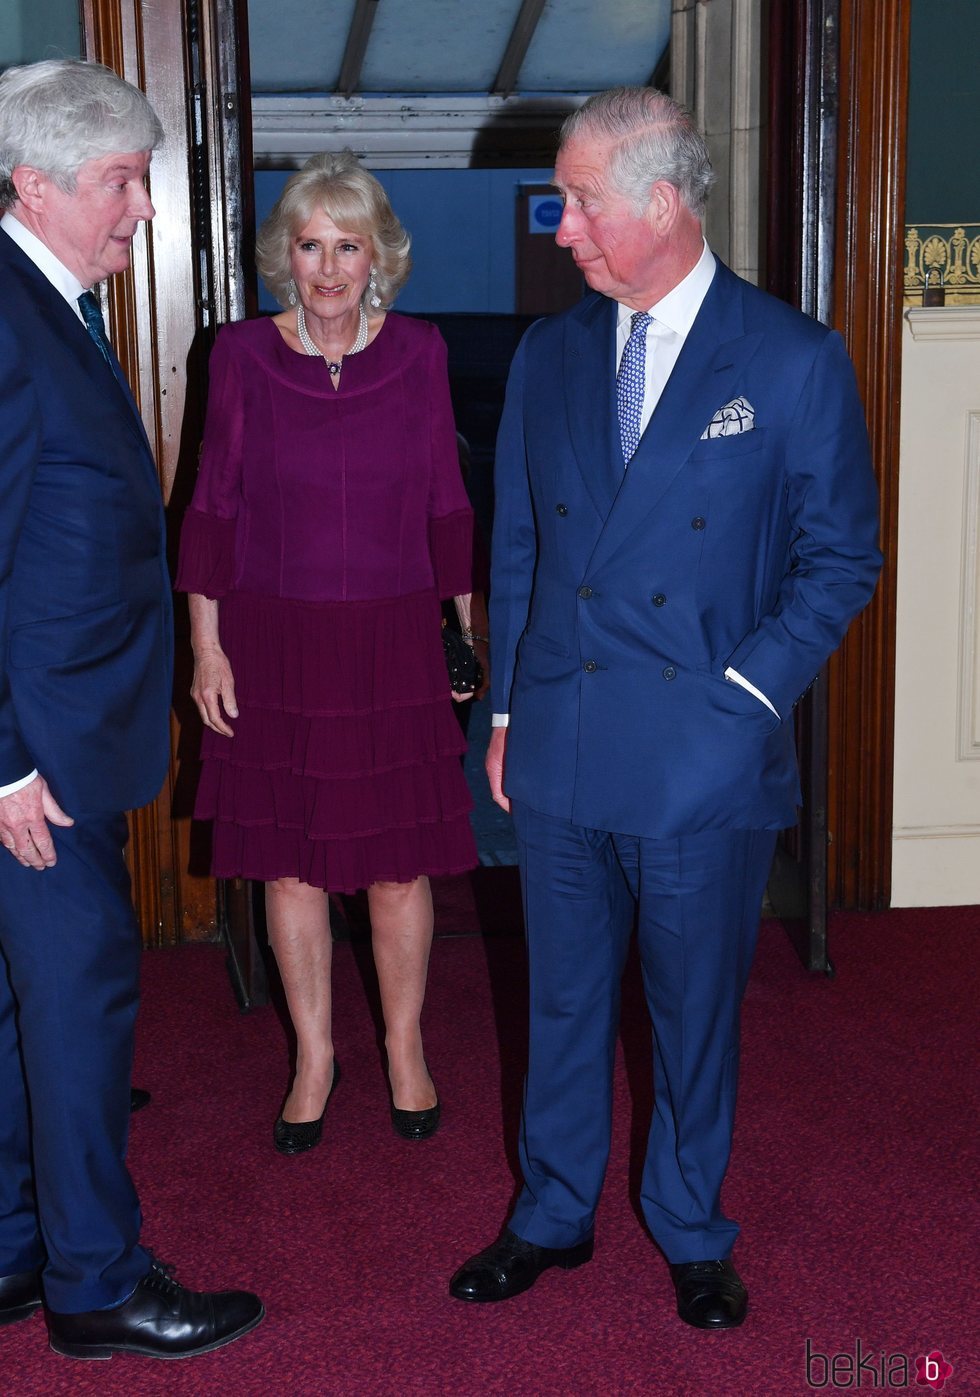 El Príncipe Carlos y la Duquesa de Cornualles en el concierto del 92 cumpleaños de la Reina